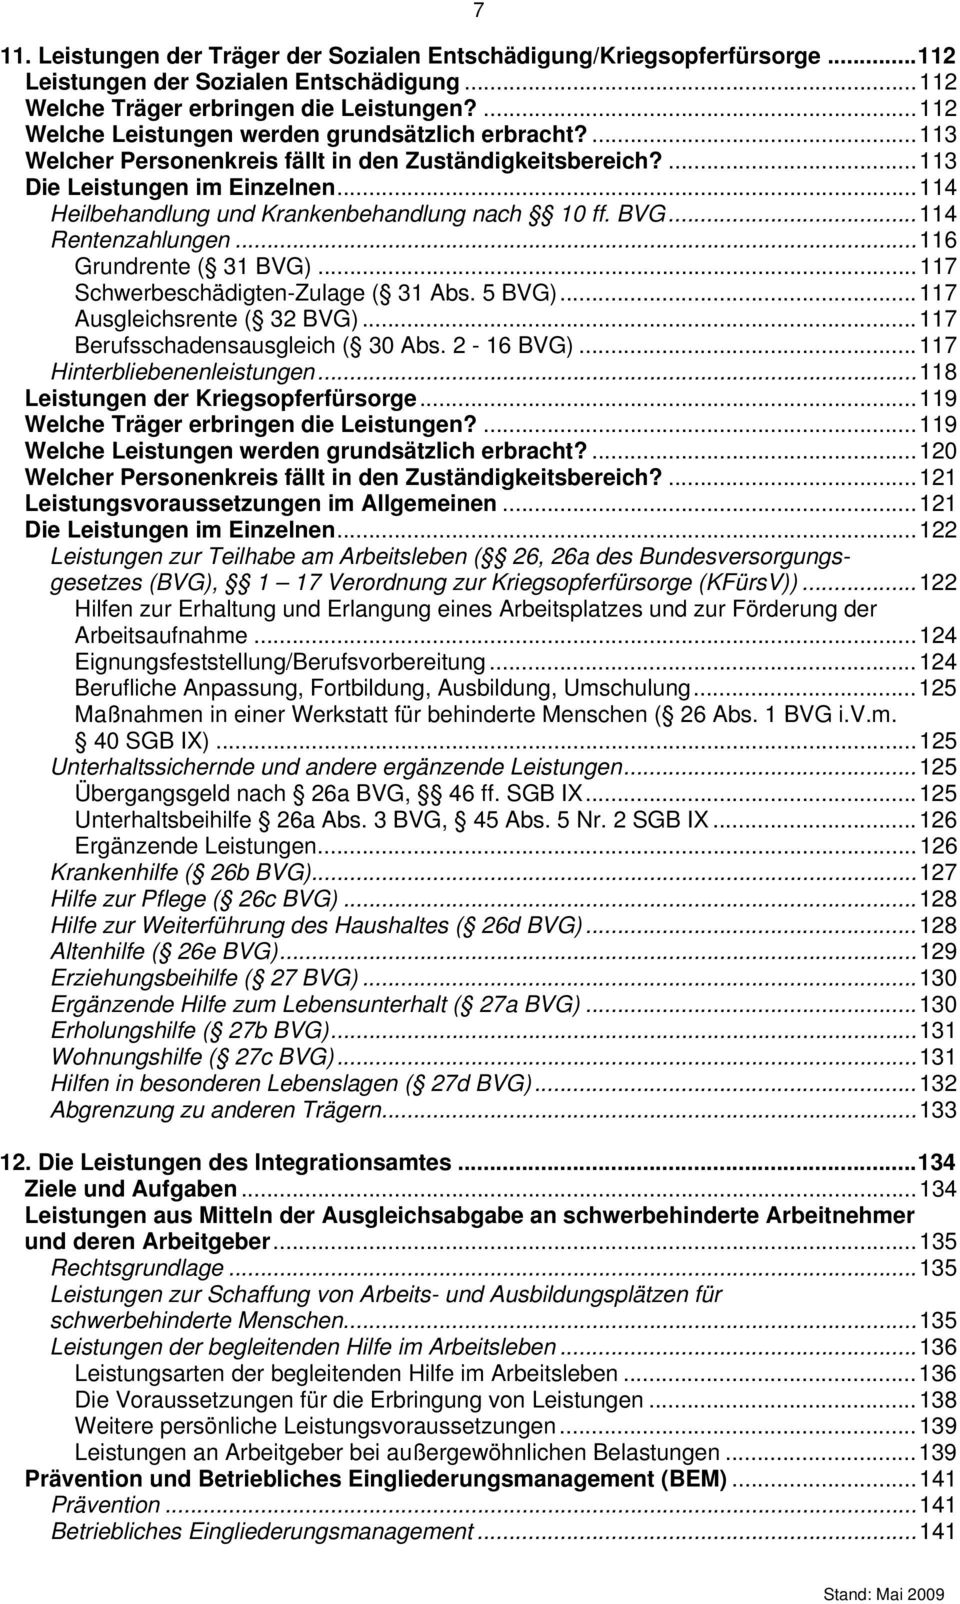 ..114 Heilbehandlung und Krankenbehandlung nach 10 ff. BVG...114 Rentenzahlungen...116 Grundrente ( 31 BVG)...117 Schwerbeschädigten-Zulage ( 31 Abs. 5 BVG)...117 Ausgleichsrente ( 32 BVG).